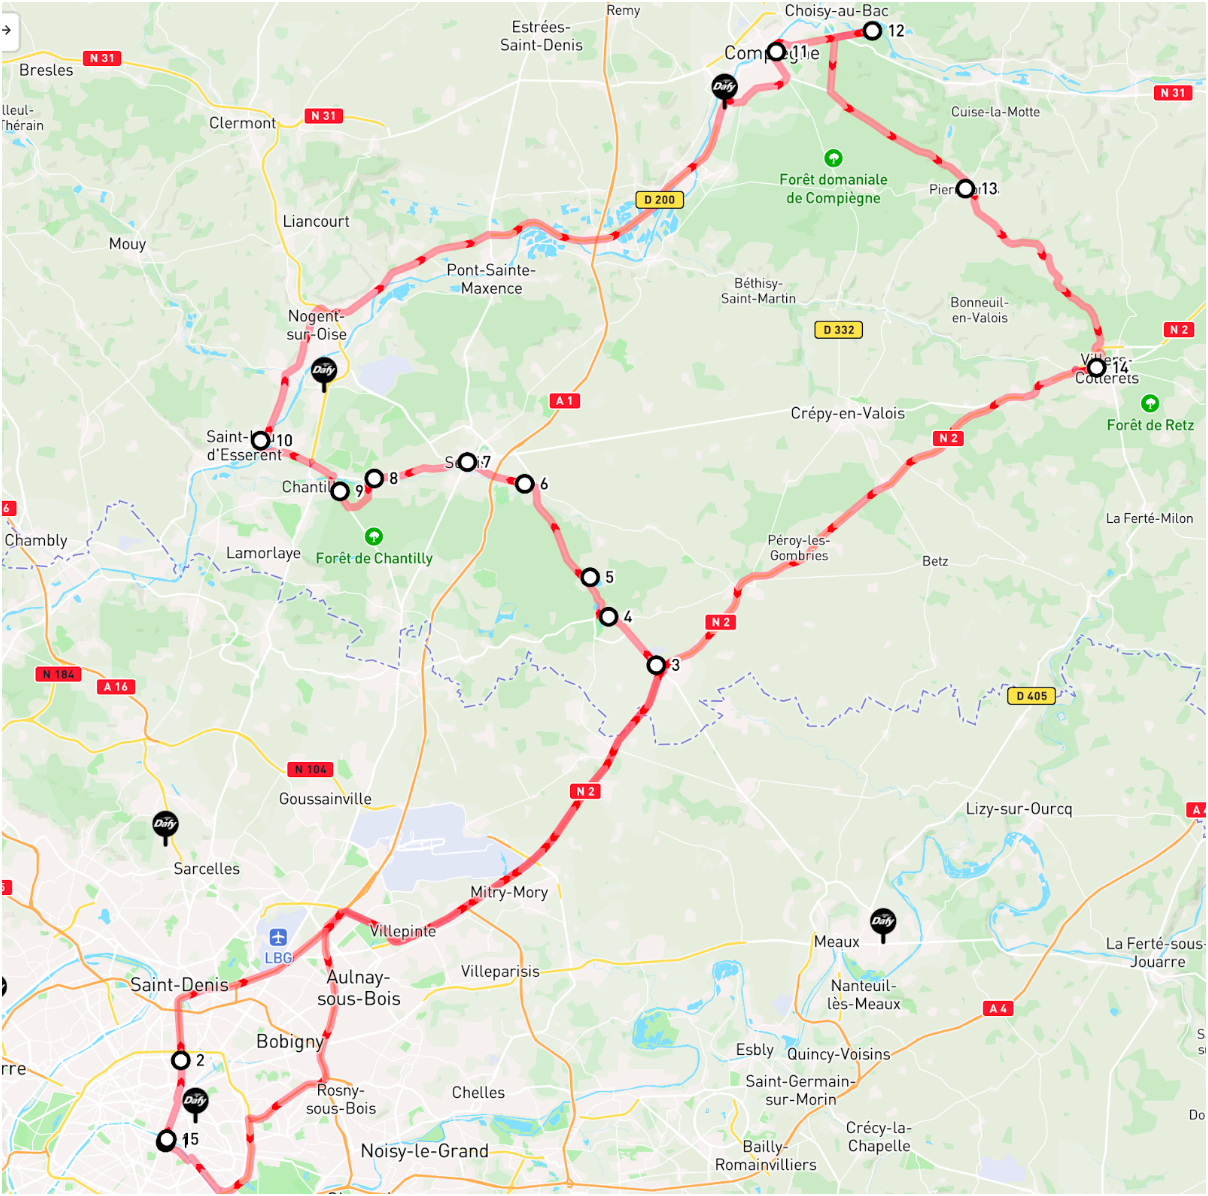 Carte de l'itinéraire à suivre pour faire la balade en moto dans l'Oise